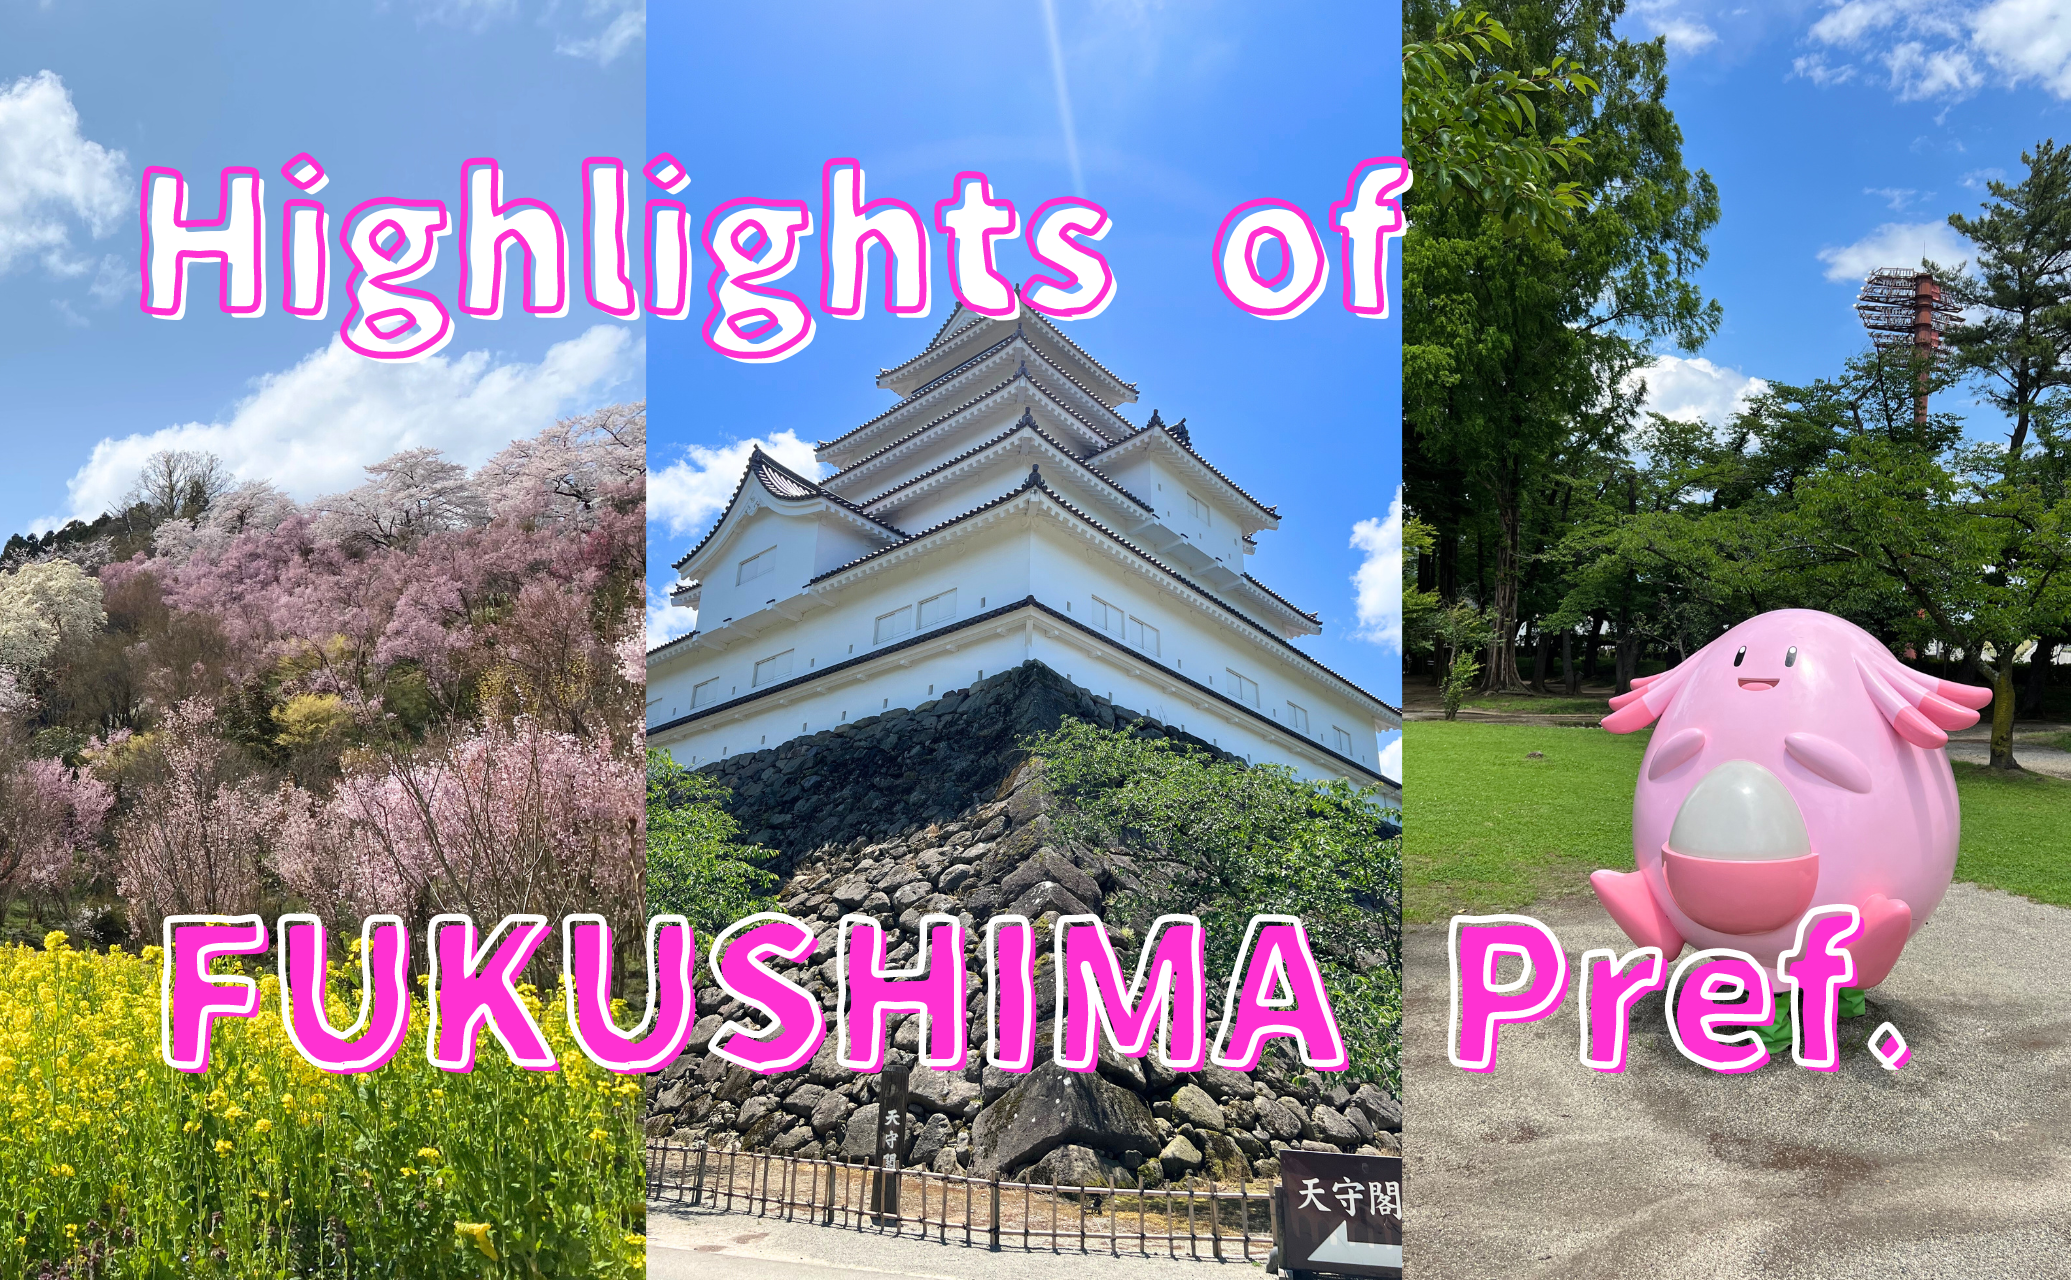 Highlights of fukushima